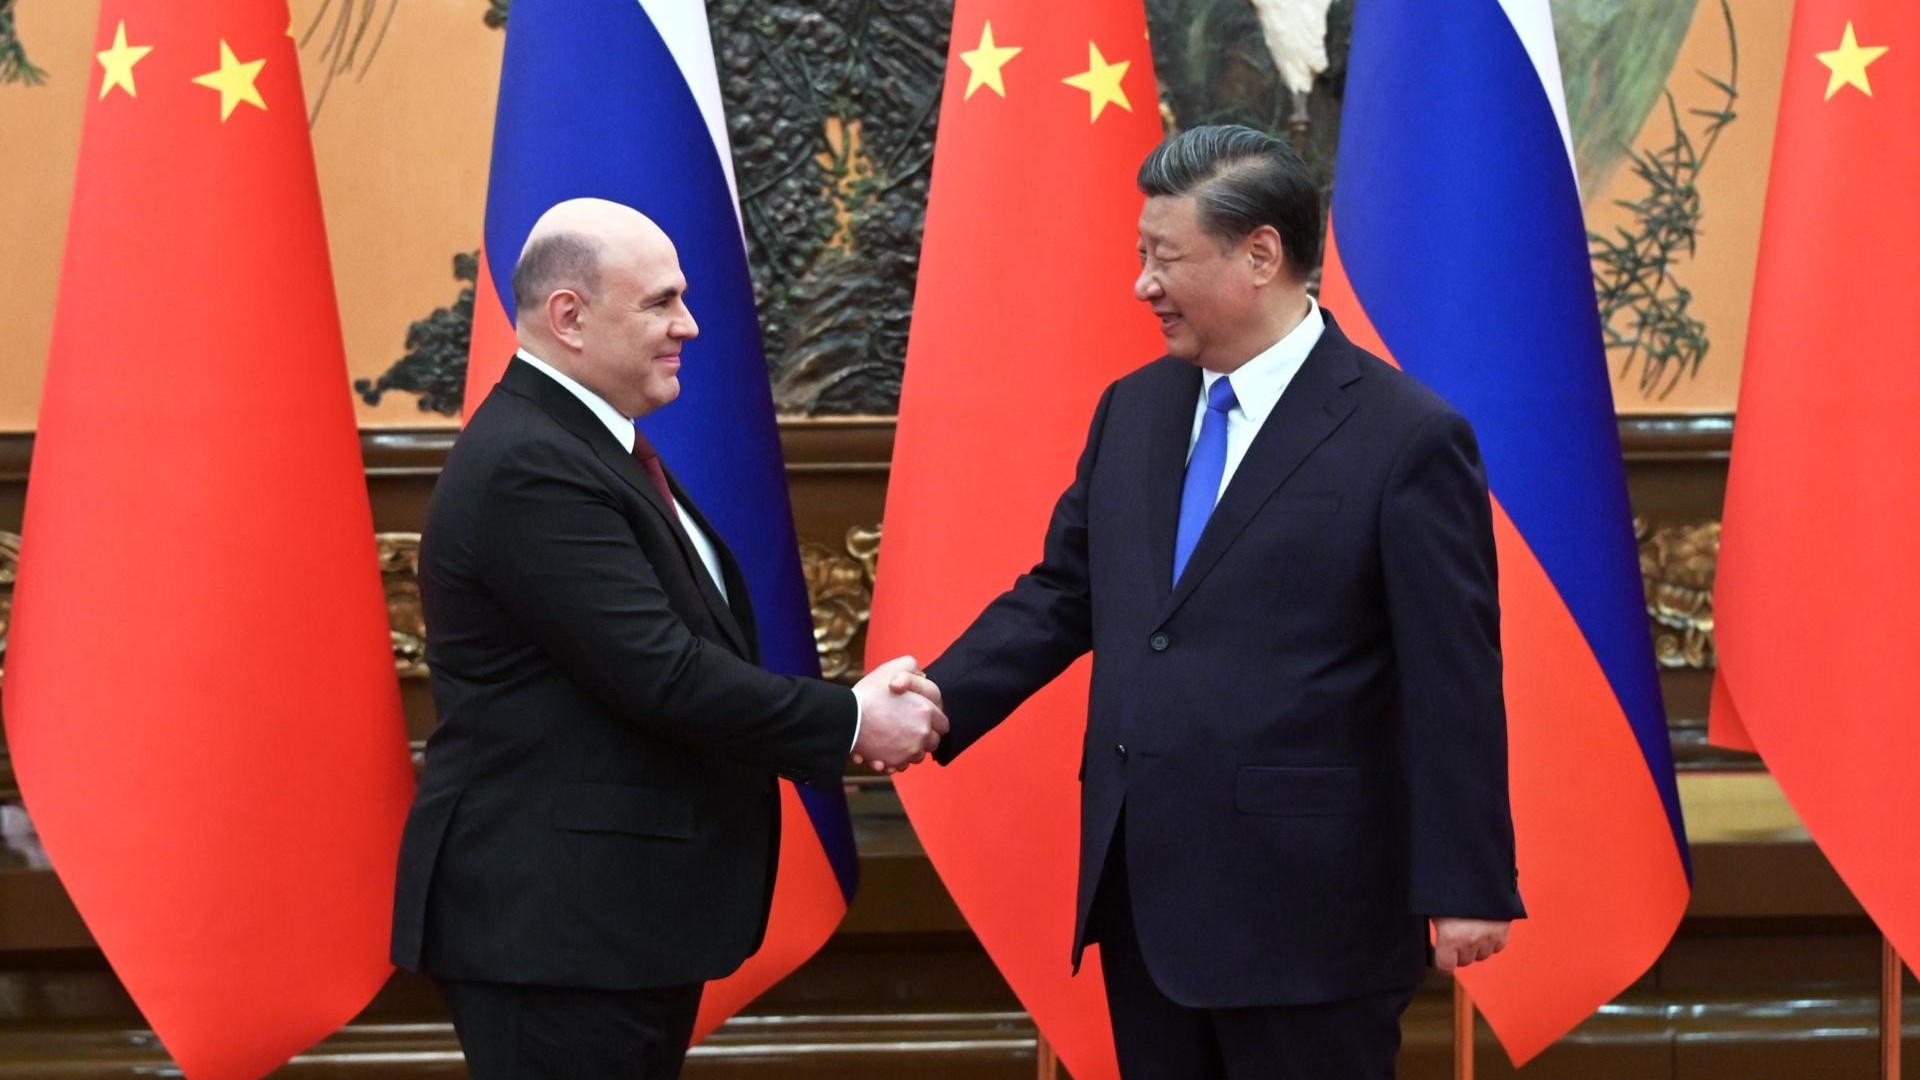 Thủ tướng Nga gặp Chủ tịch Trung Quốc: Tỏ trân trọng quan hệ với Bắc Kinh, tuyên bố 'kề vai sát cánh'